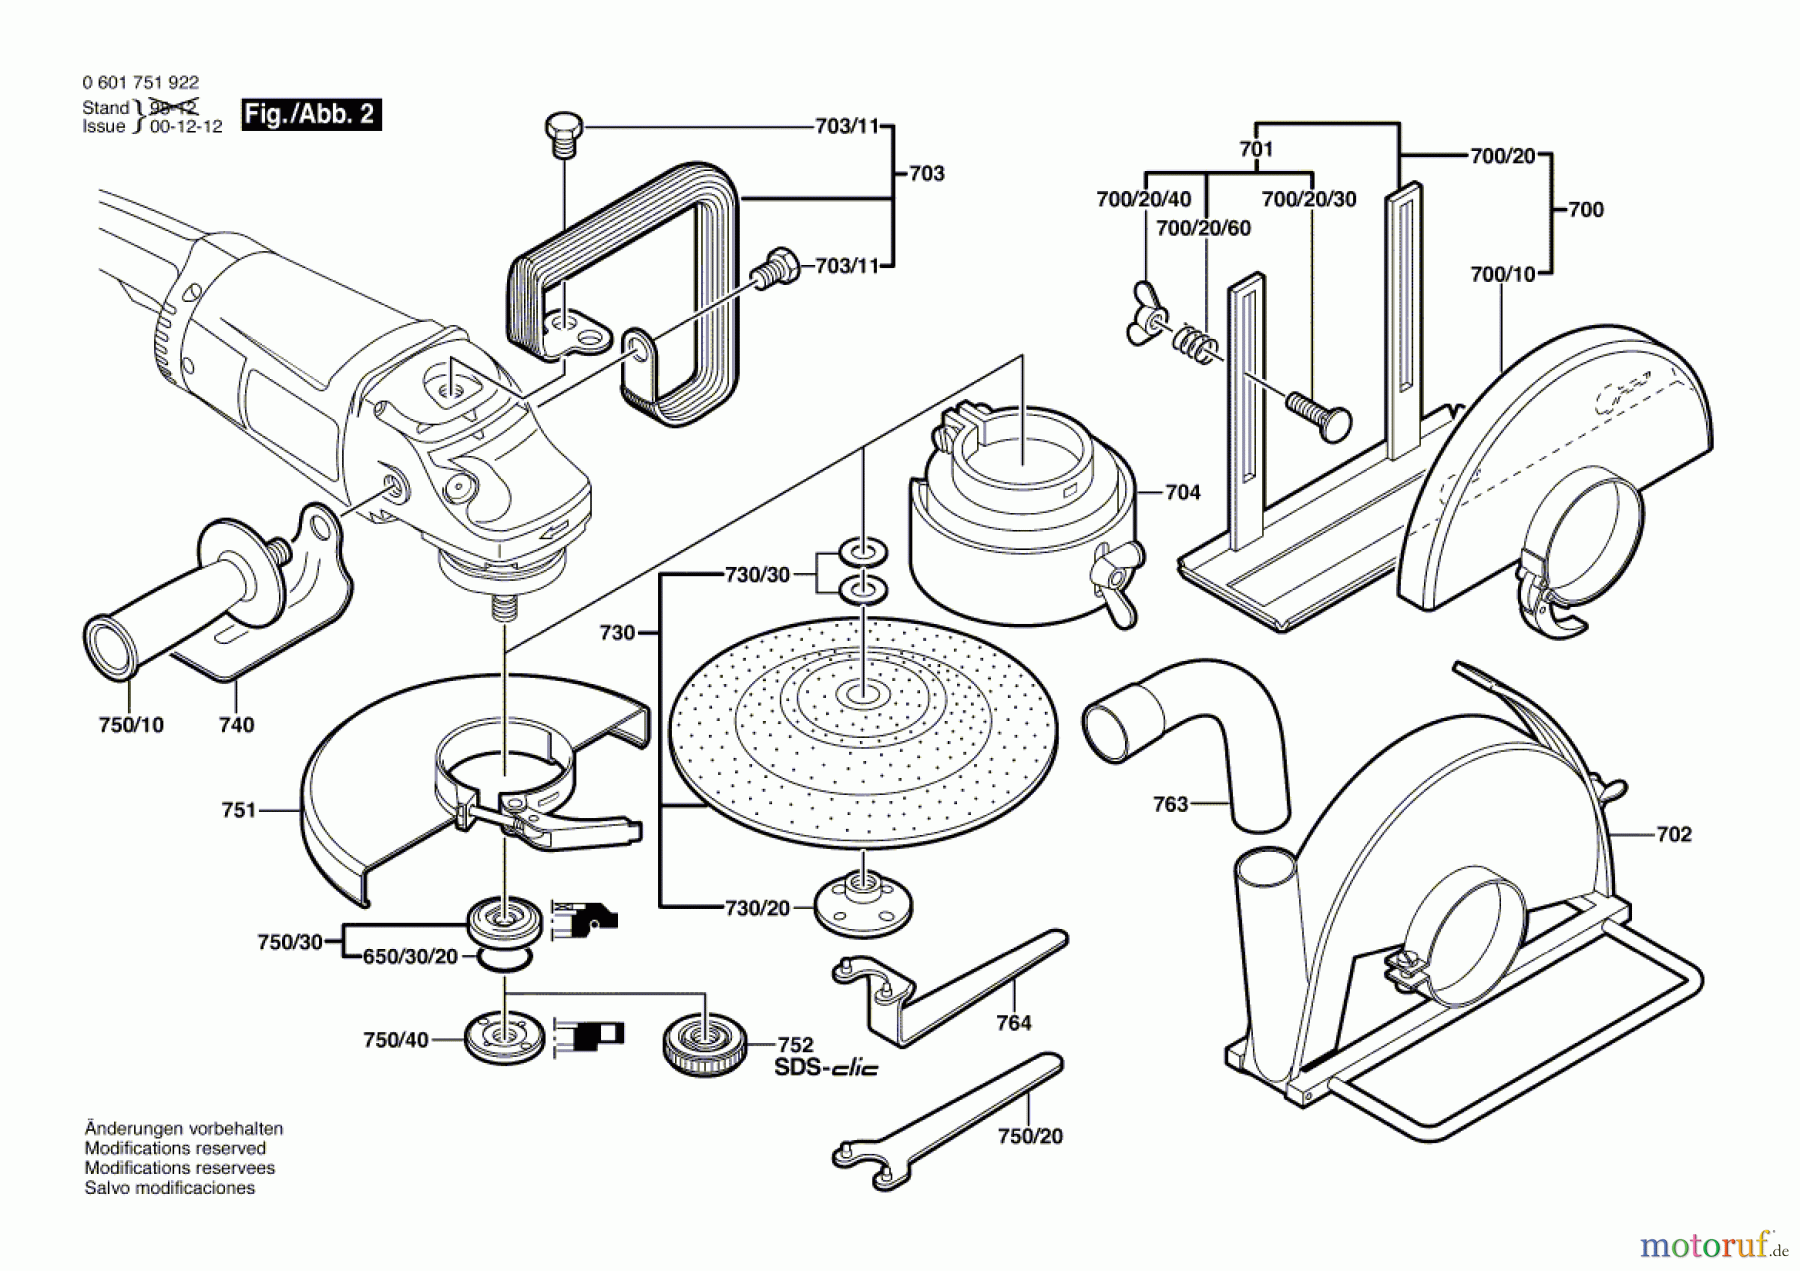  Bosch Werkzeug Winkelschleifer GWS 2000-18 J Seite 2